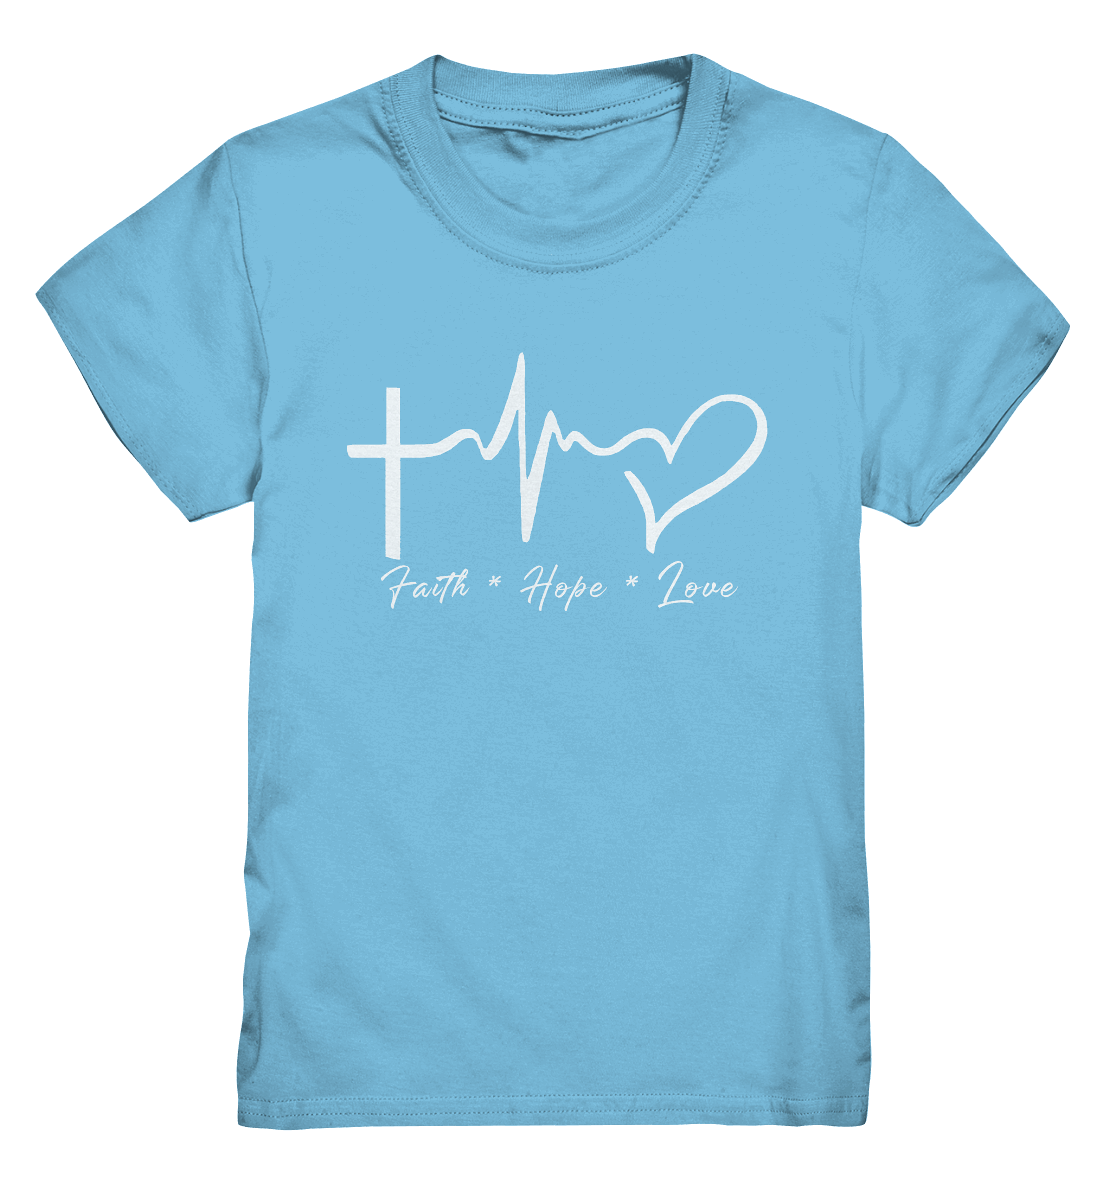 Faith * Hope * Love - Kids Premium Shirt